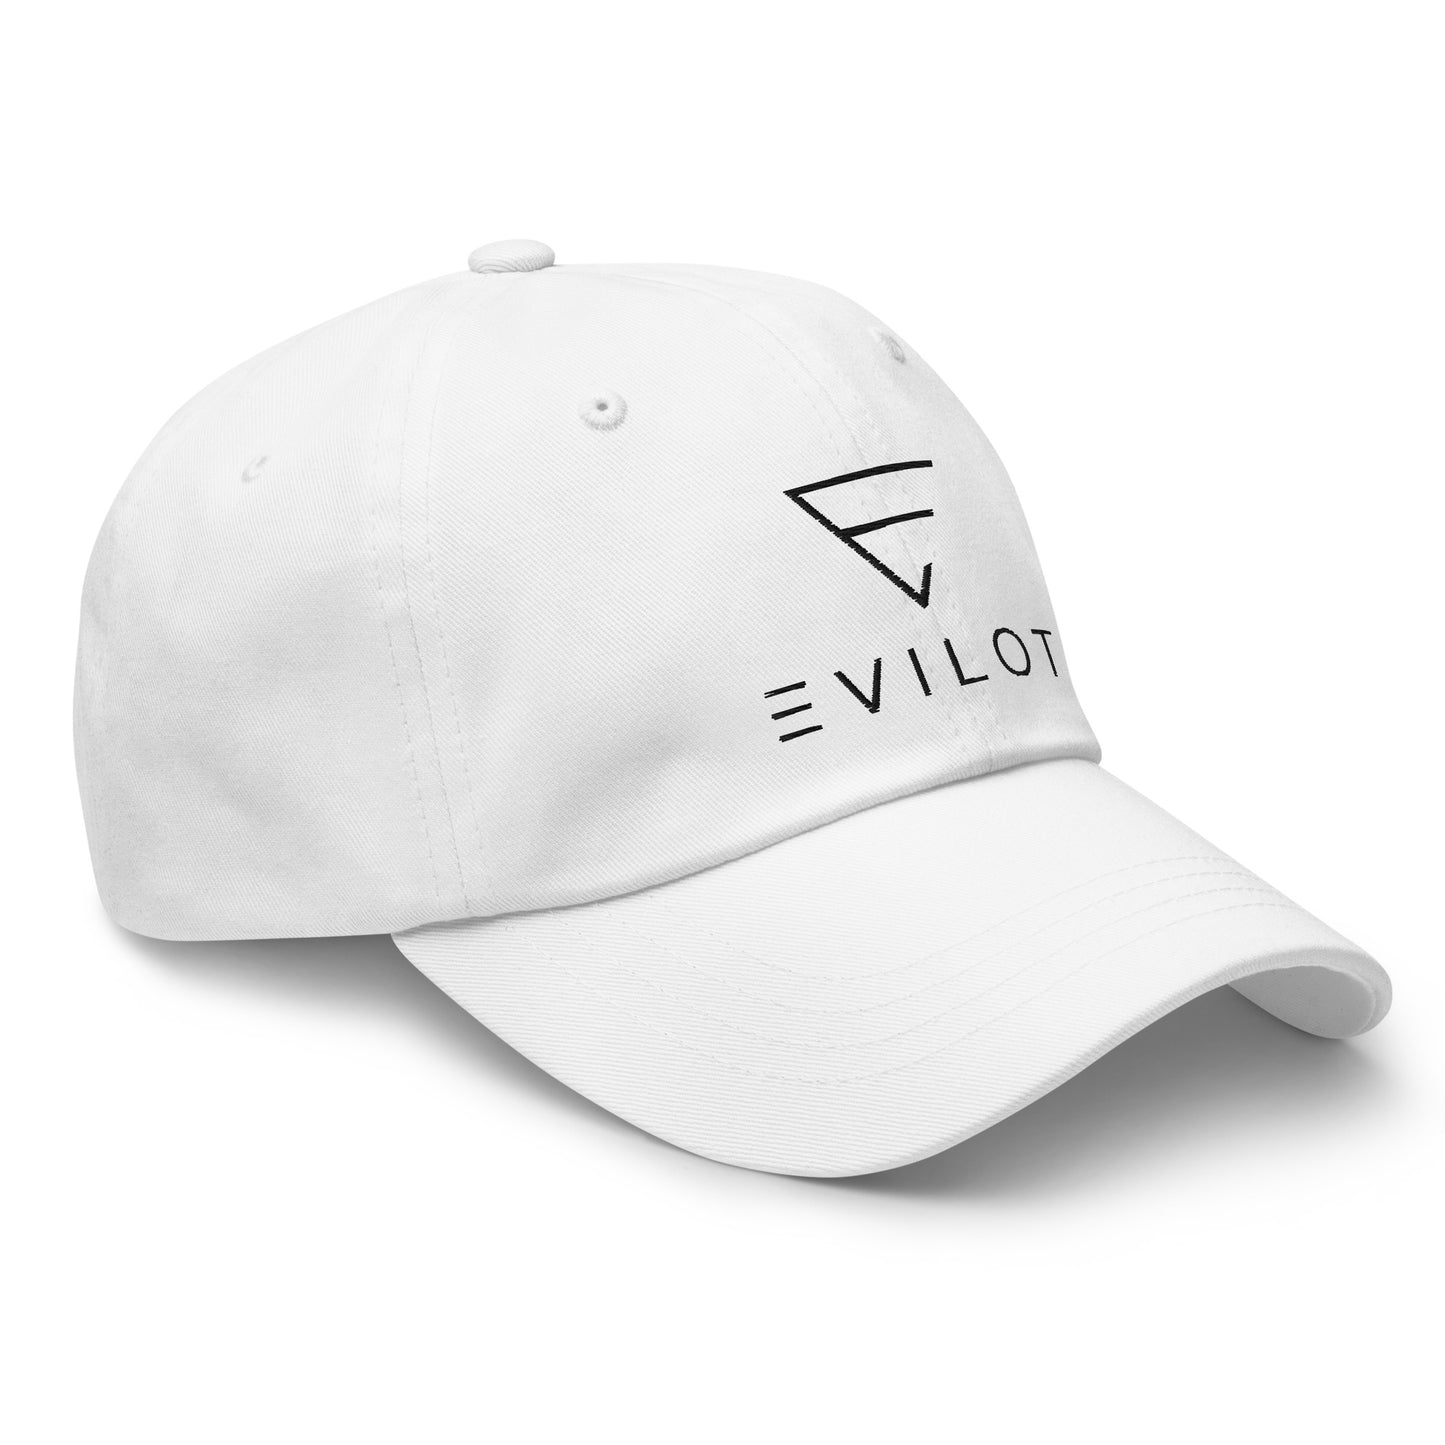 Evilot Hat - White